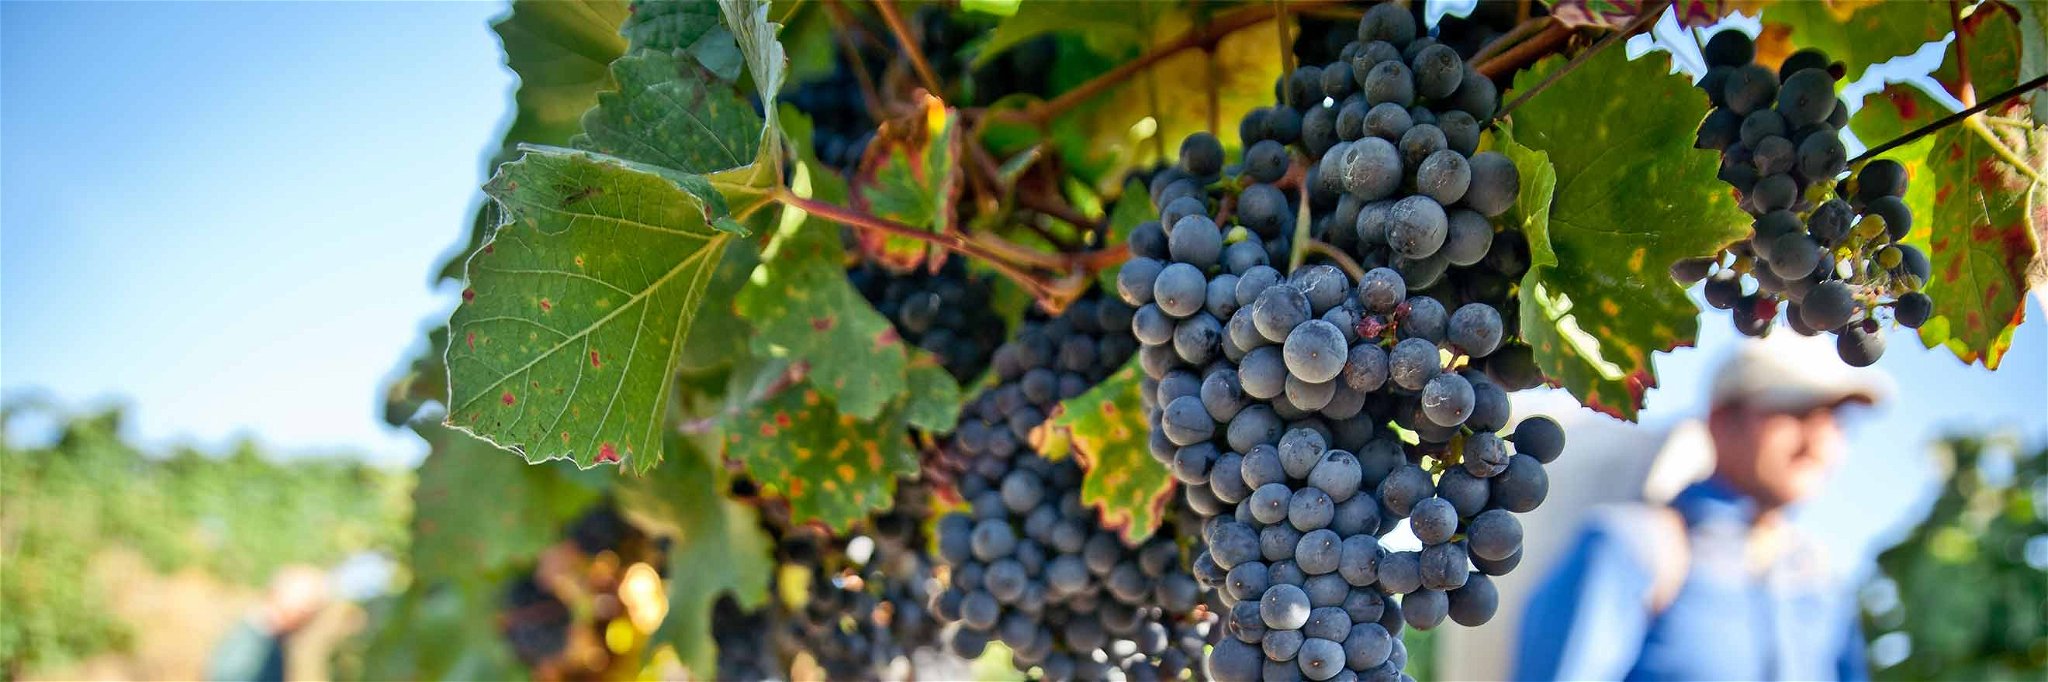 Im September beginnt die Weinlese und damit die Saison vieler vinophiler Veranstaltungen.